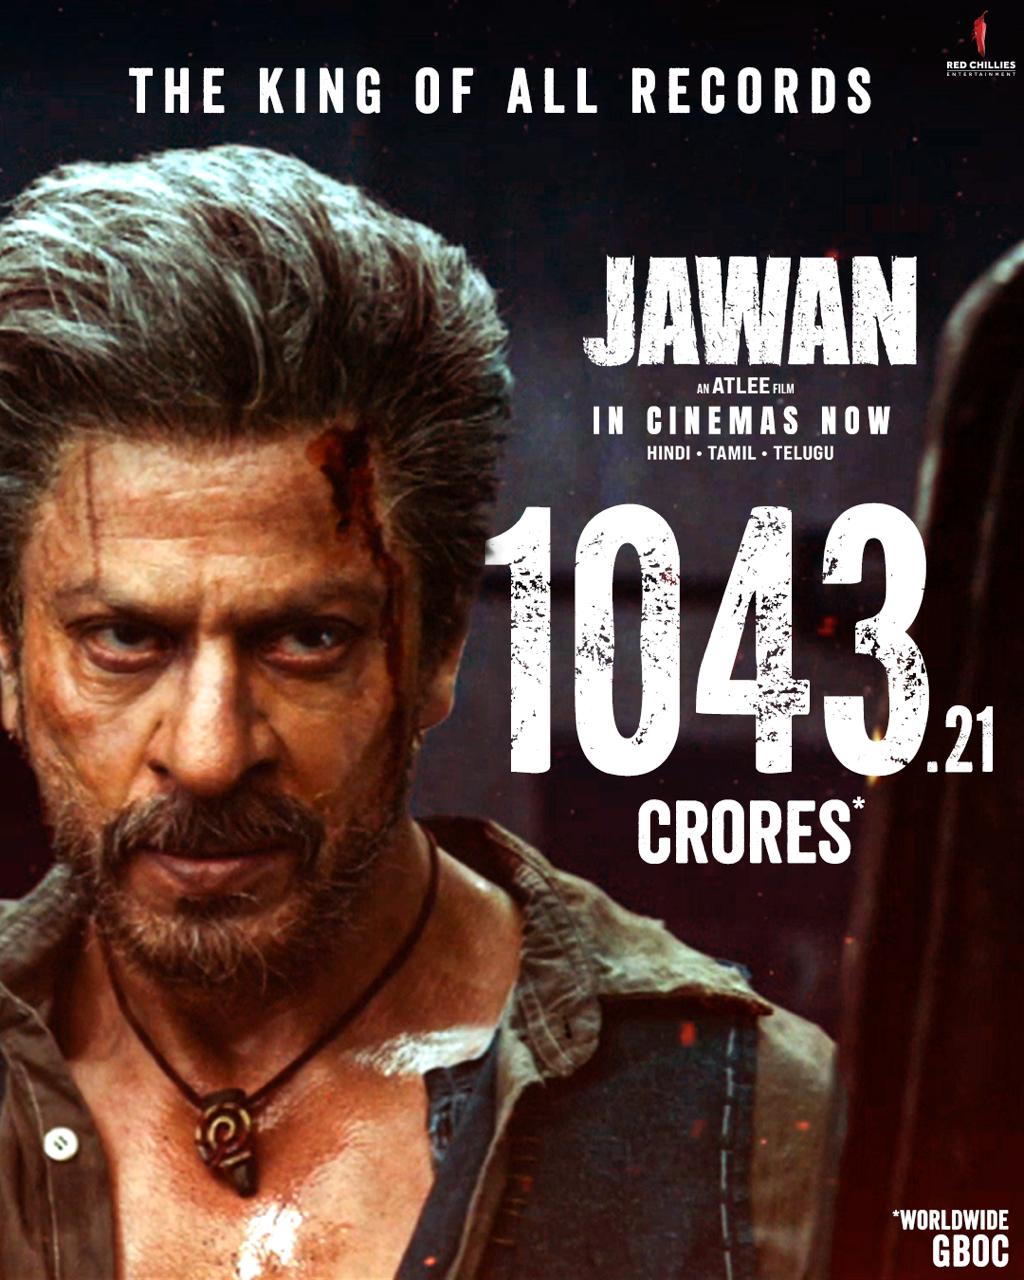 अब तक की सबसे ज्यादा कमाई करने वाली फिल्मों के लिस्ट में शाहरुख खान की दो फिल्में टॉप पर 30613